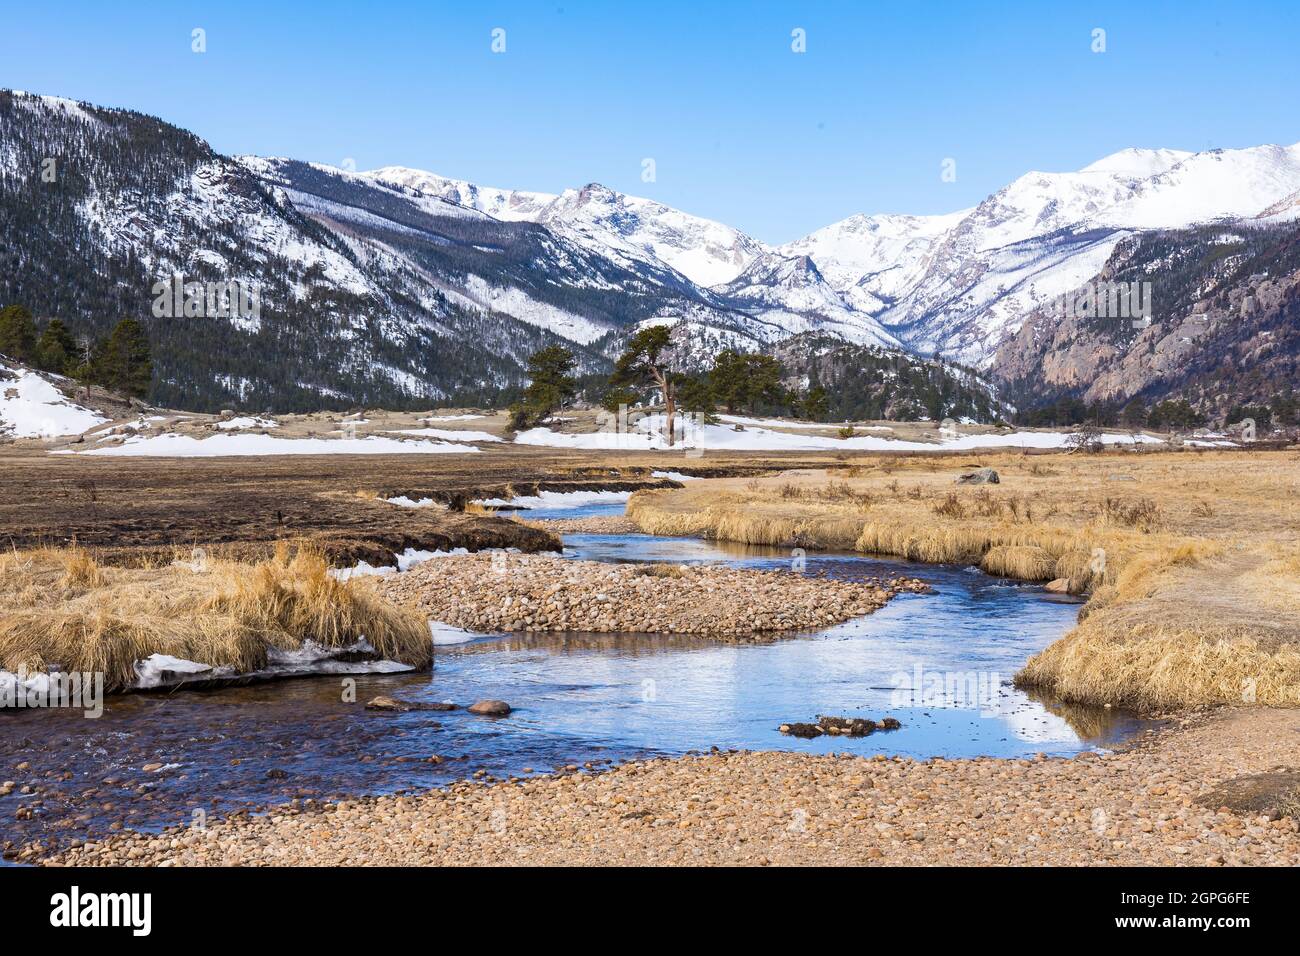 Montagnes d'hiver enneigées dans le parc Moraine, le long de la rivière Big Thompson, dans le parc national des montagnes Rocheuses, au Colorado Banque D'Images